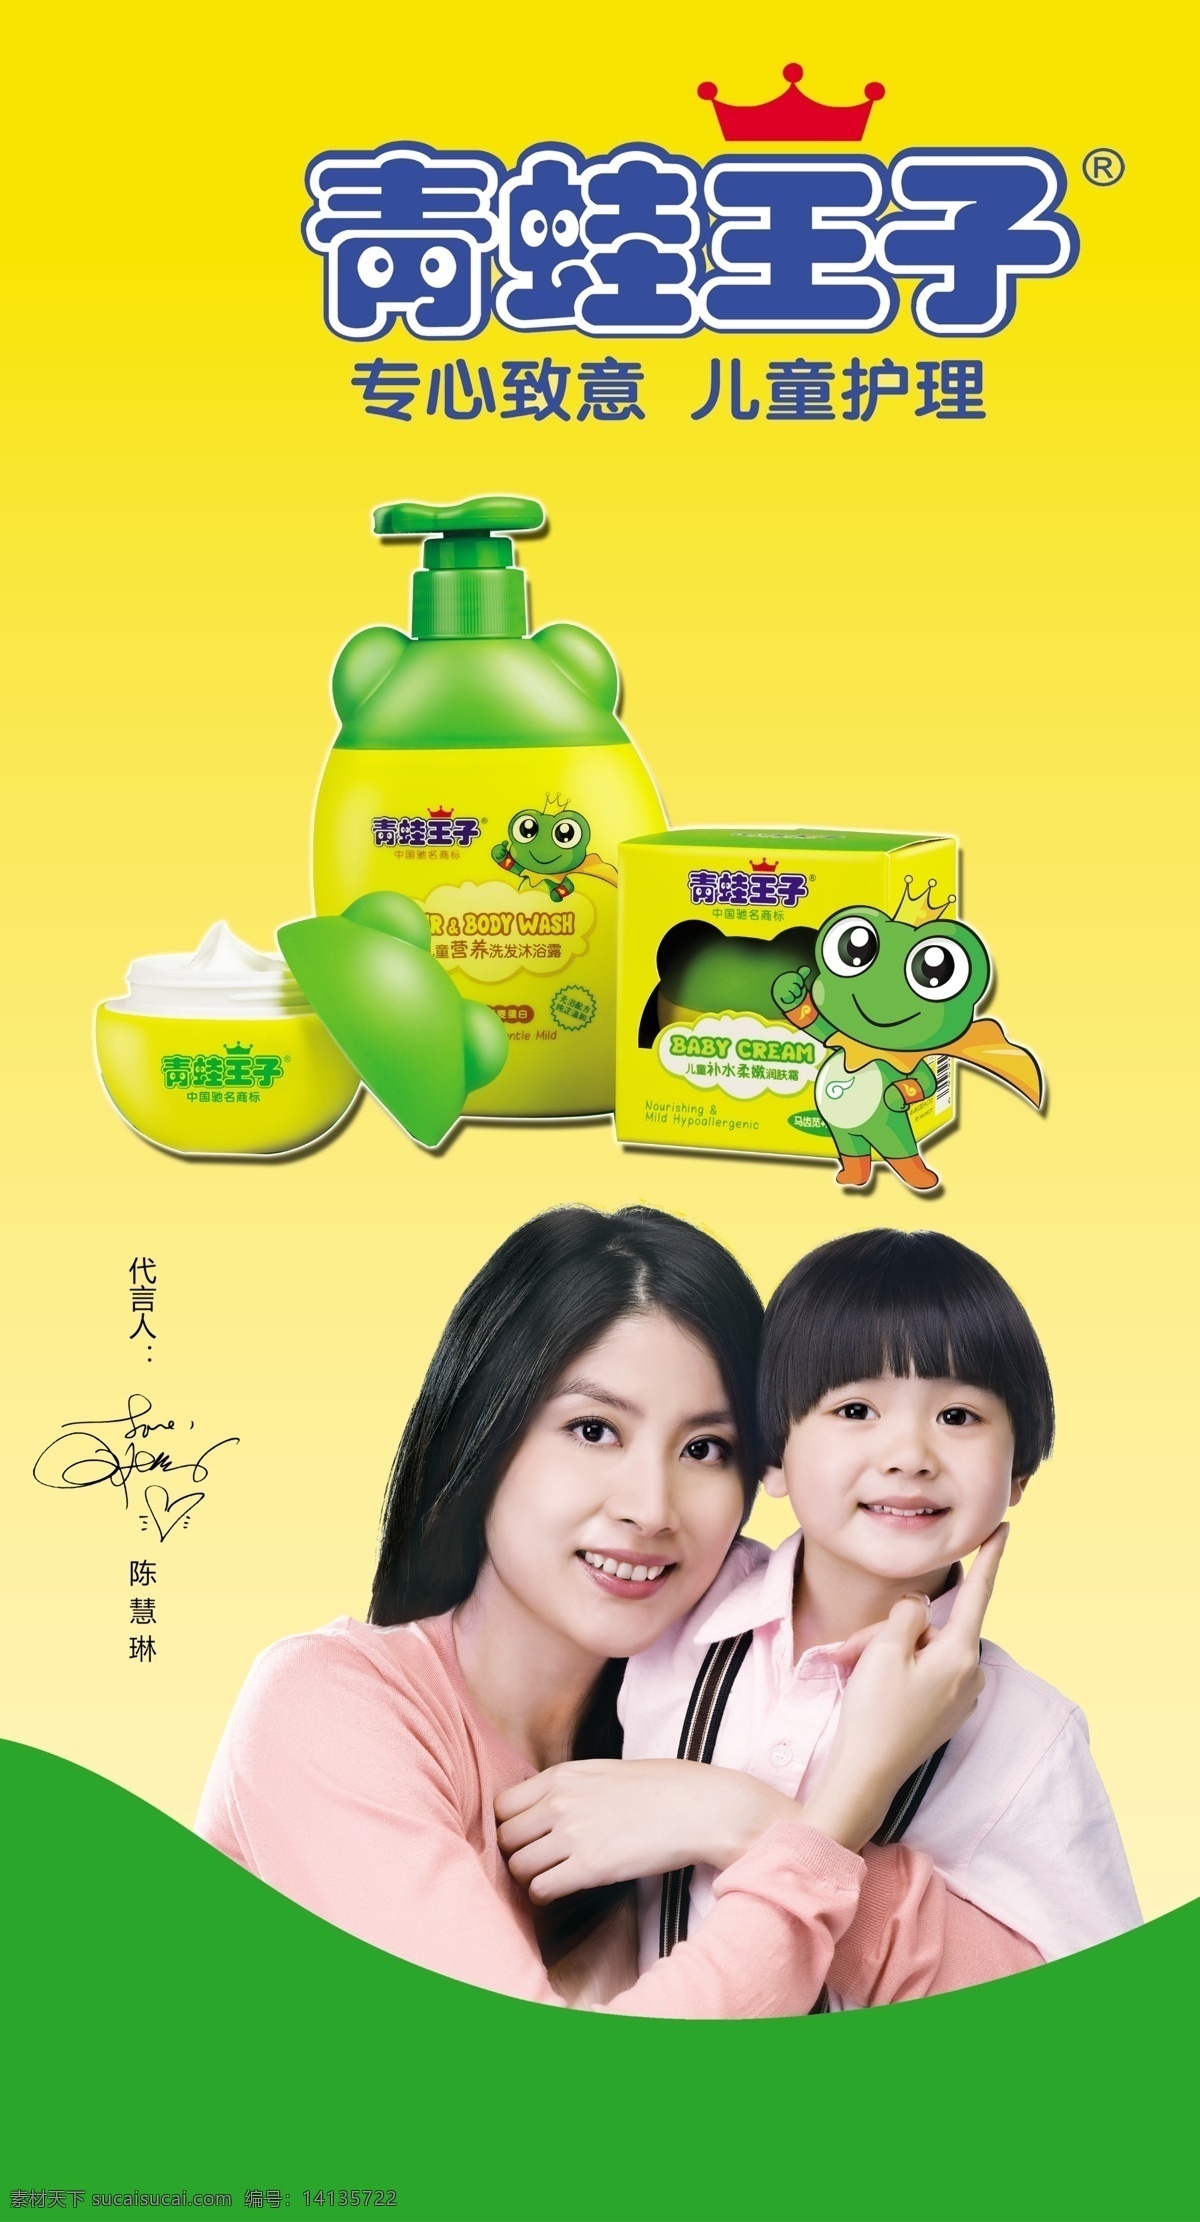 青蛙王子 儿童护理 青蛙小王子 青蛙护理 小孩 陈慧琳 广告设计模板 源文件